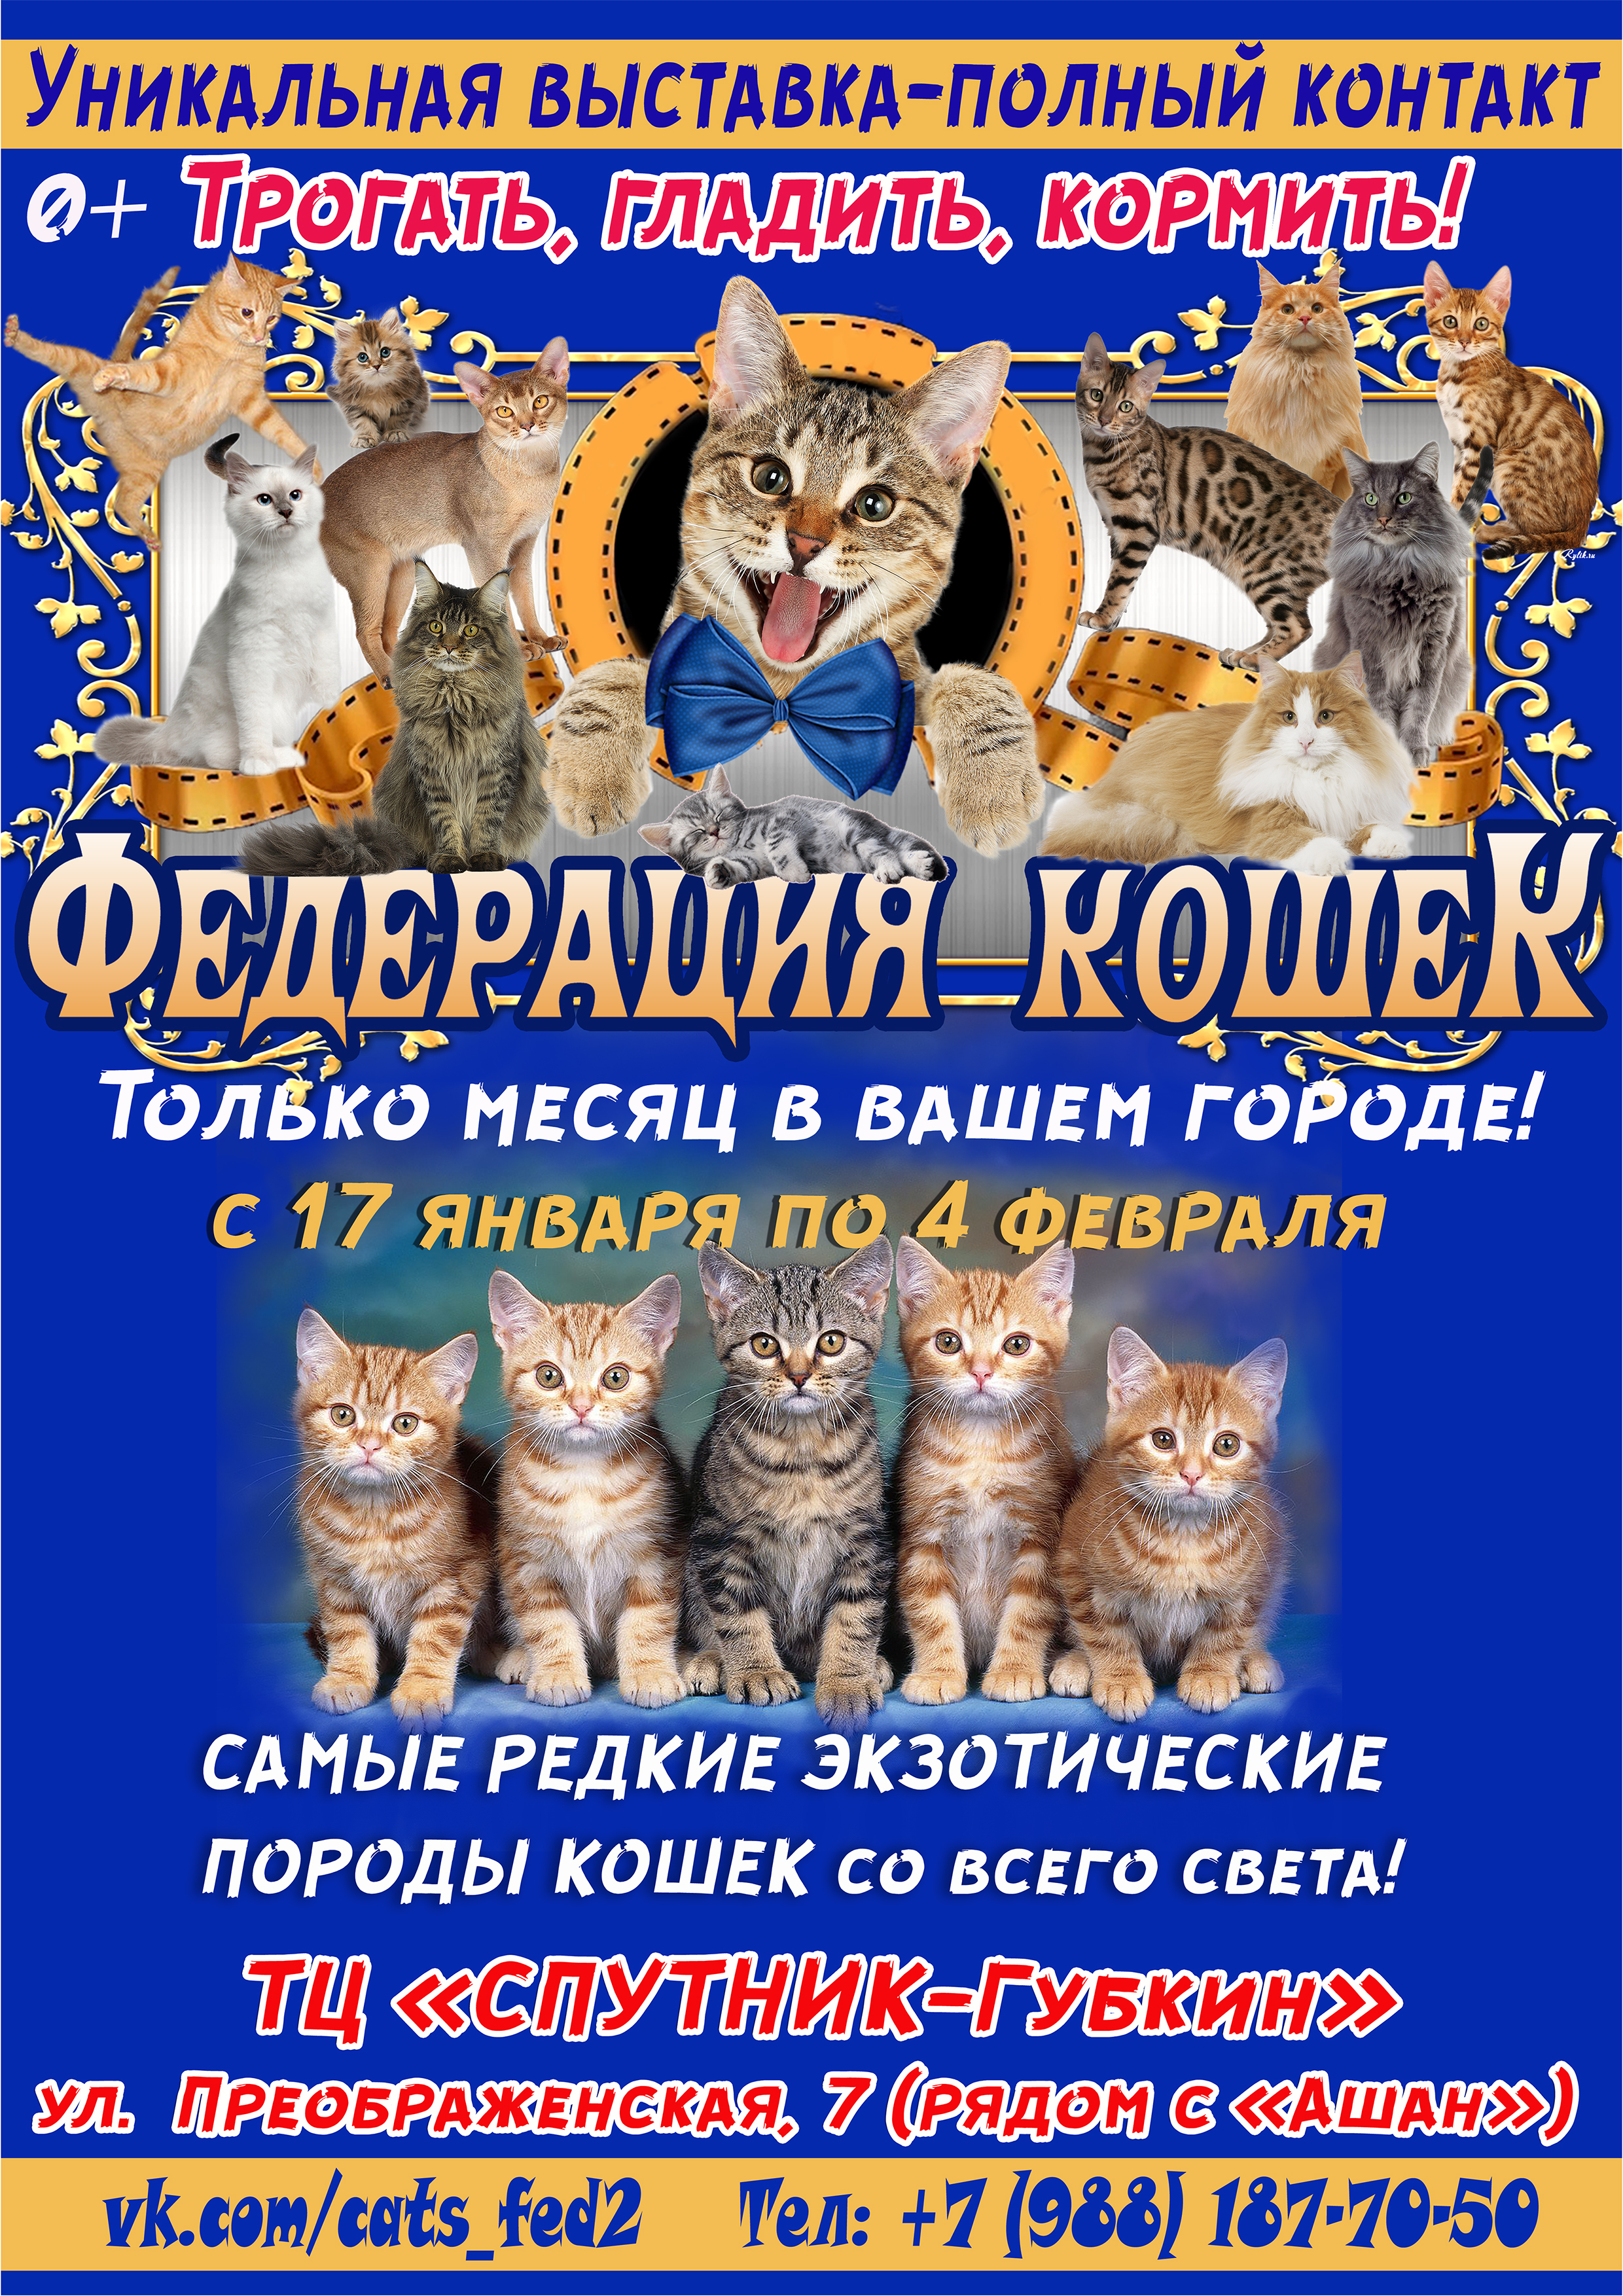 Зоовыставка "Федерация кошек" из Санкт-Петербурга